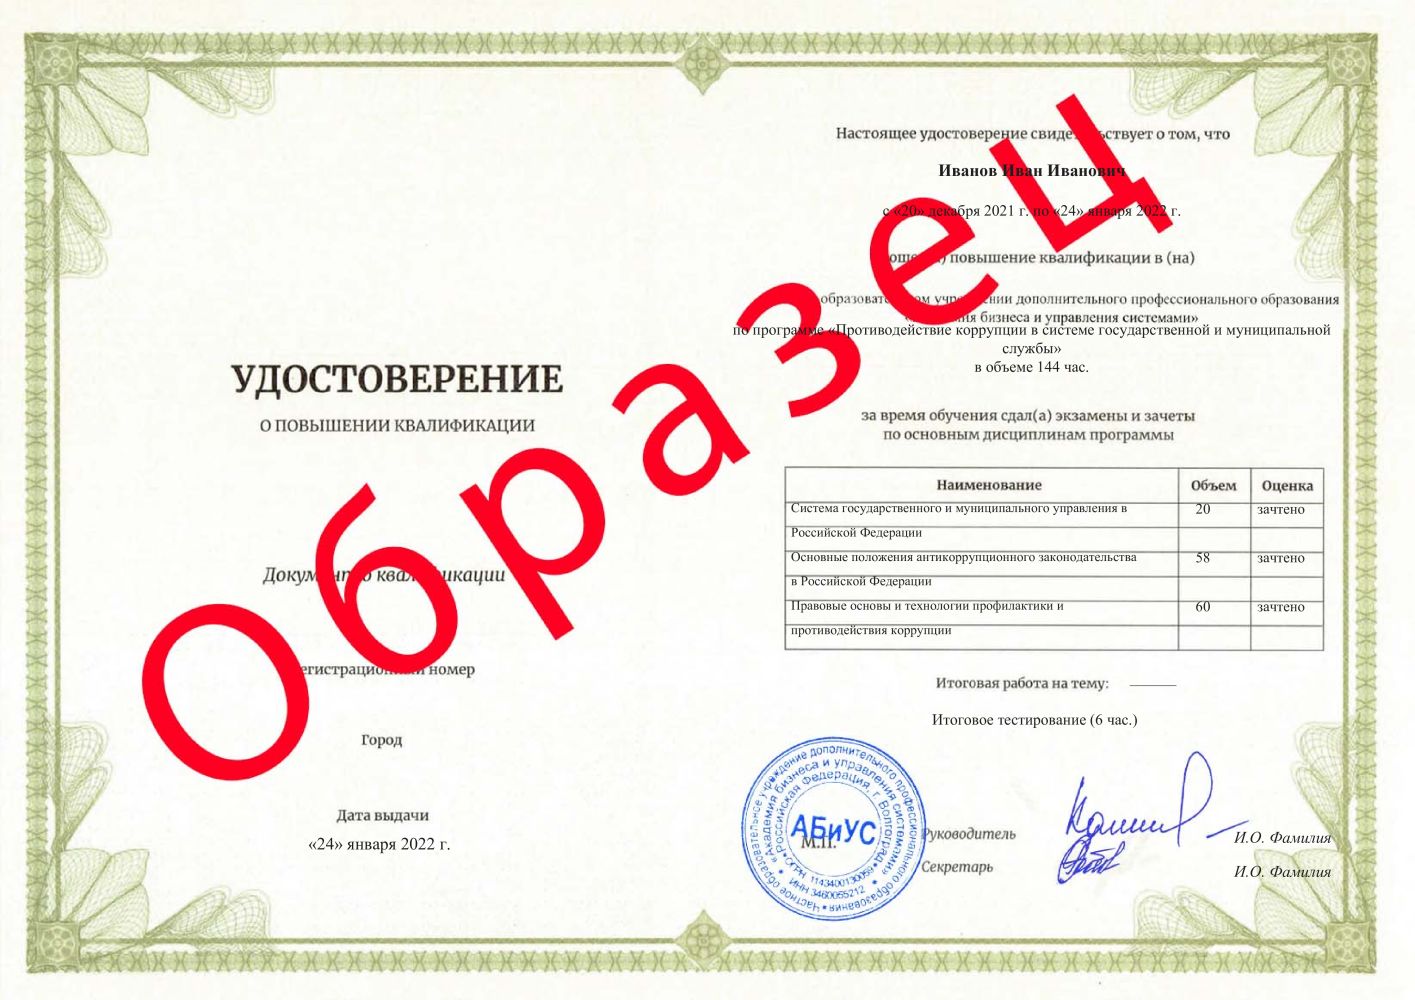 Удостоверение Противодействие коррупции в системе государственной и муниципальной службы 144 часа 6267 руб.